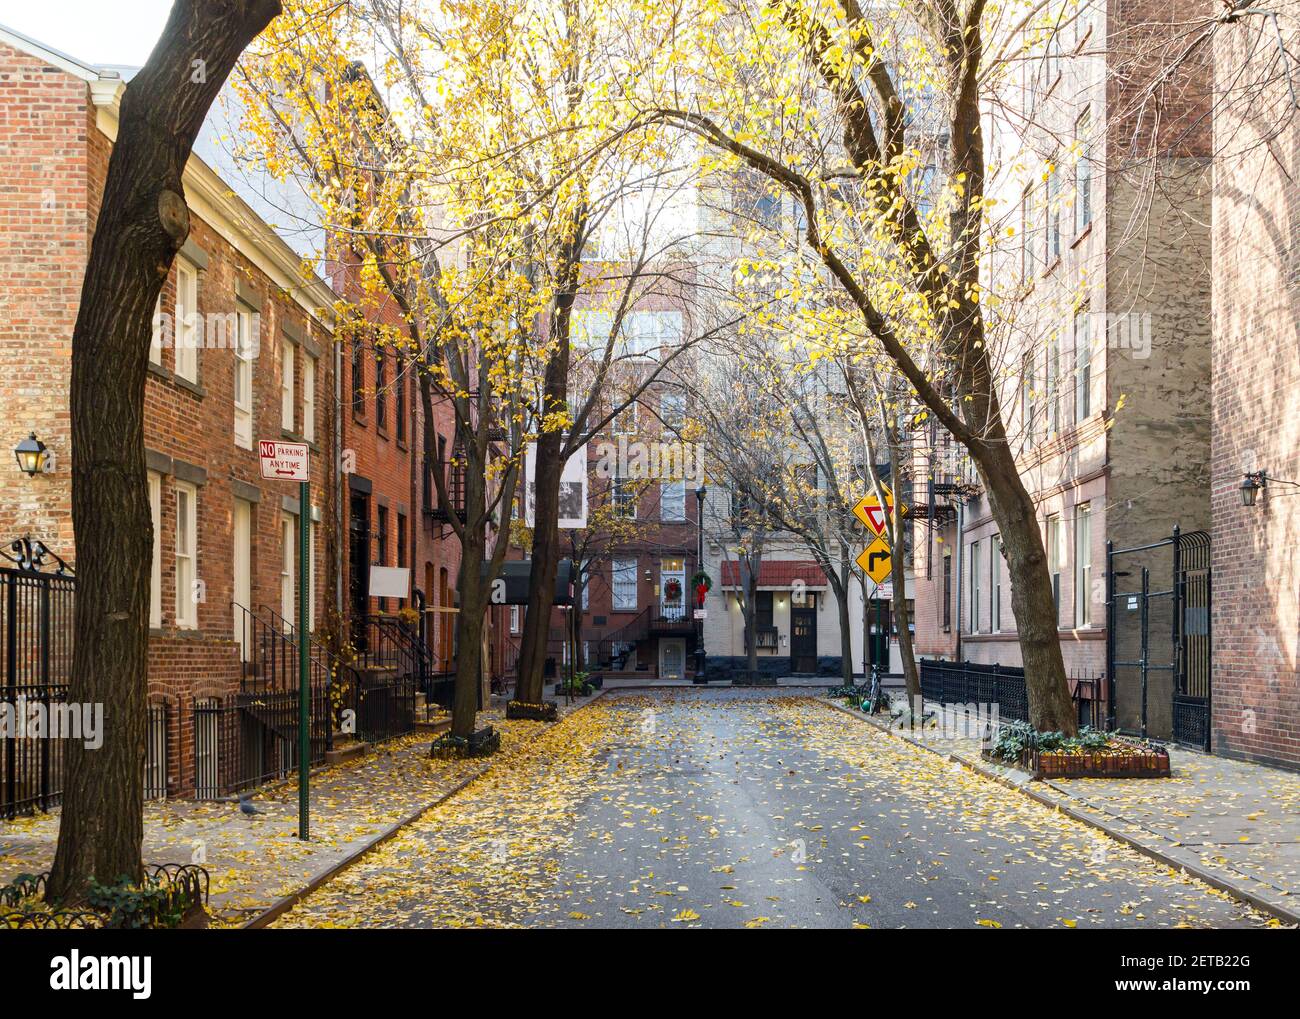 Des arbres d'automne colorés bordent Commerce Street dans le quartier historique West Village de Manhattan, New York City NYC Banque D'Images